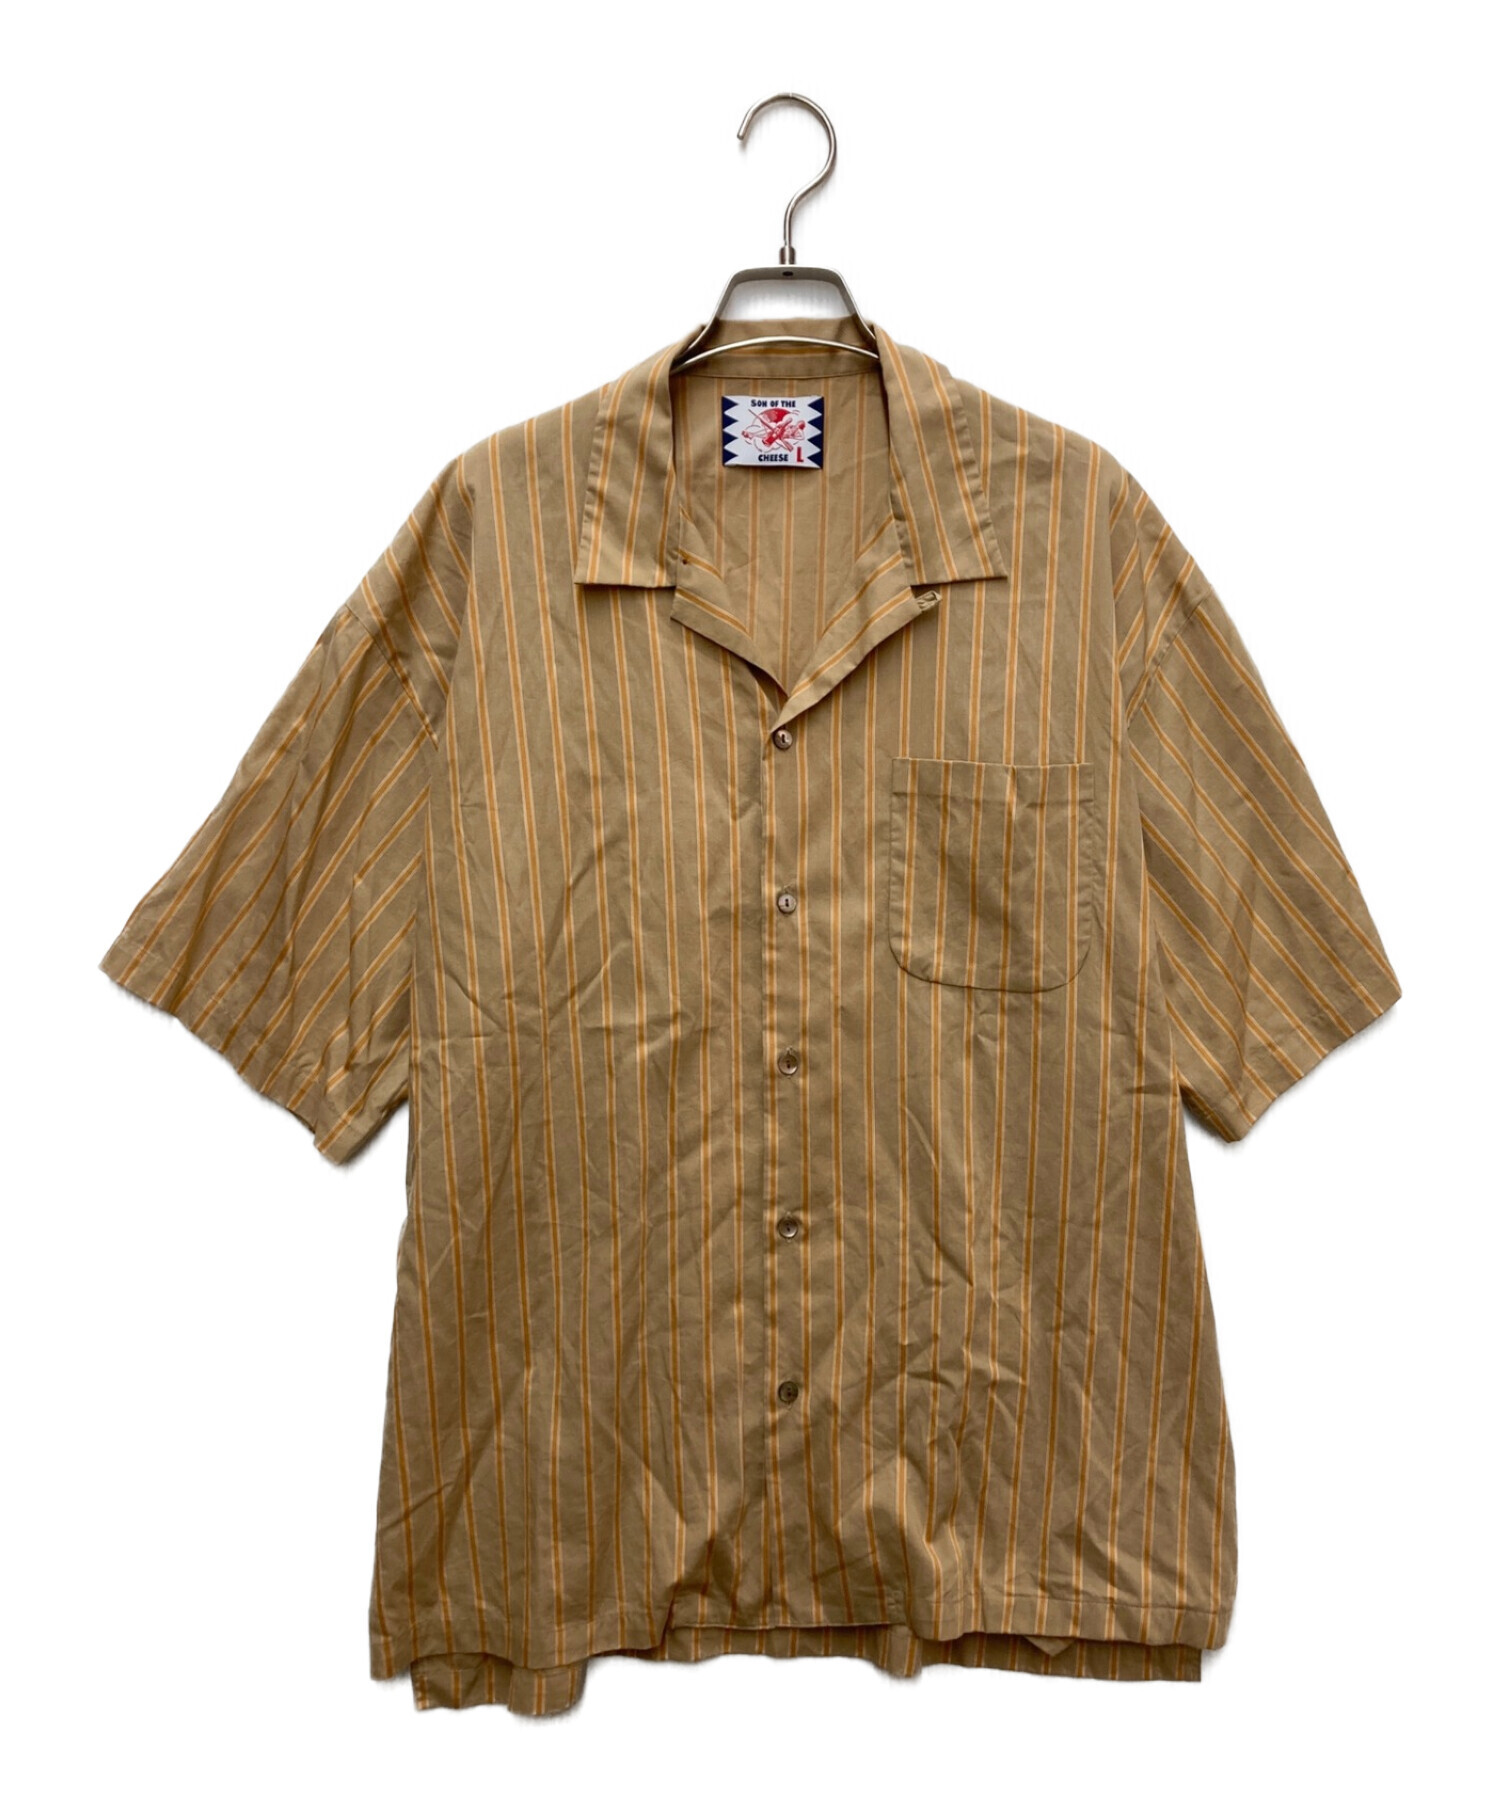 L 未使用品 22AW サノバチーズ Stitch Shirt ステッチシャツ